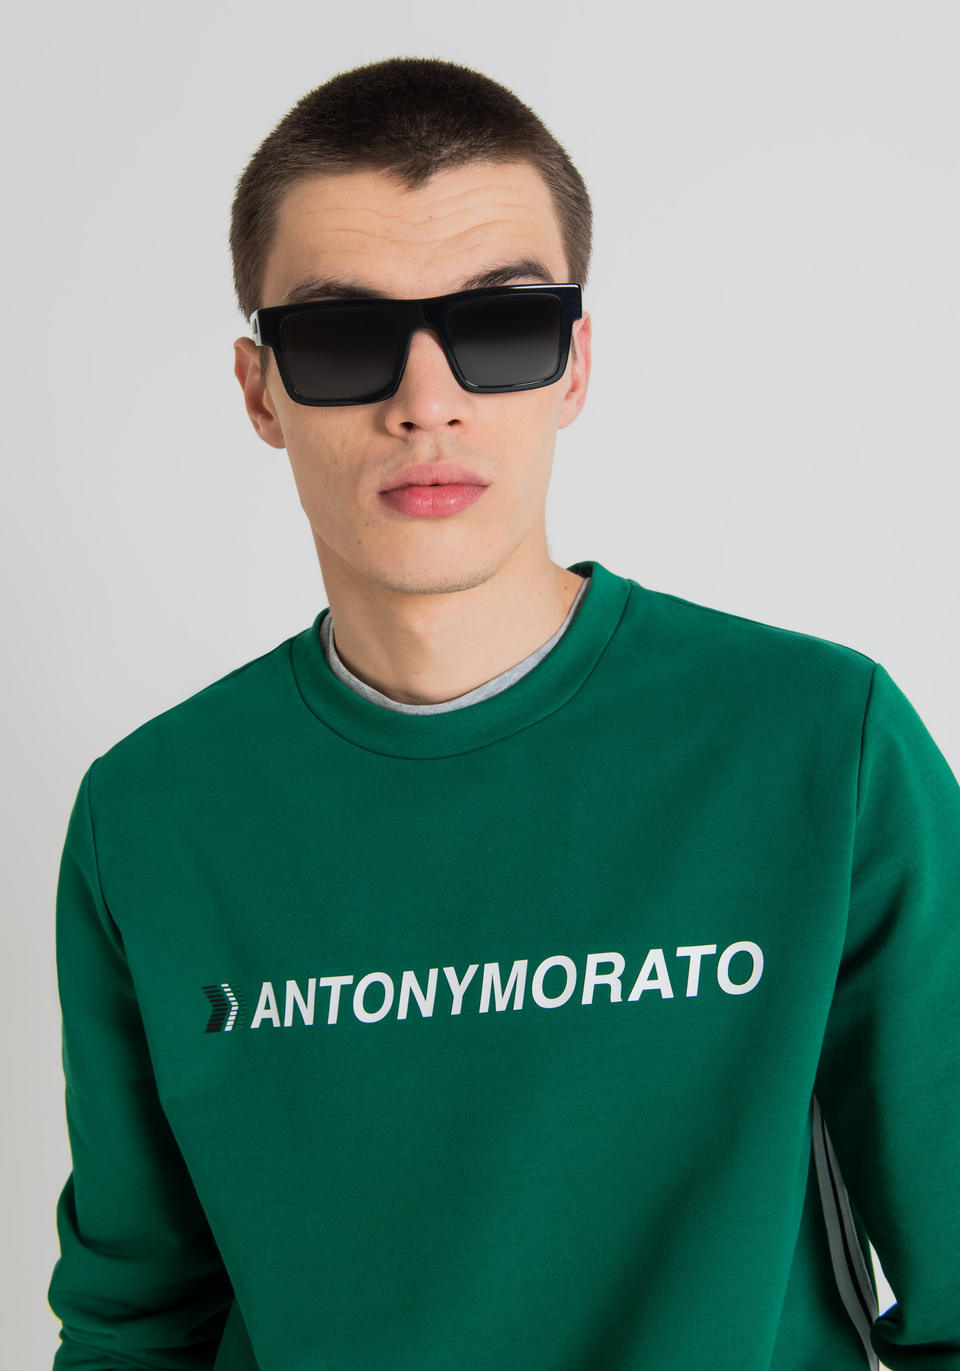 LOOK 37 - Antony Morato Online Shop